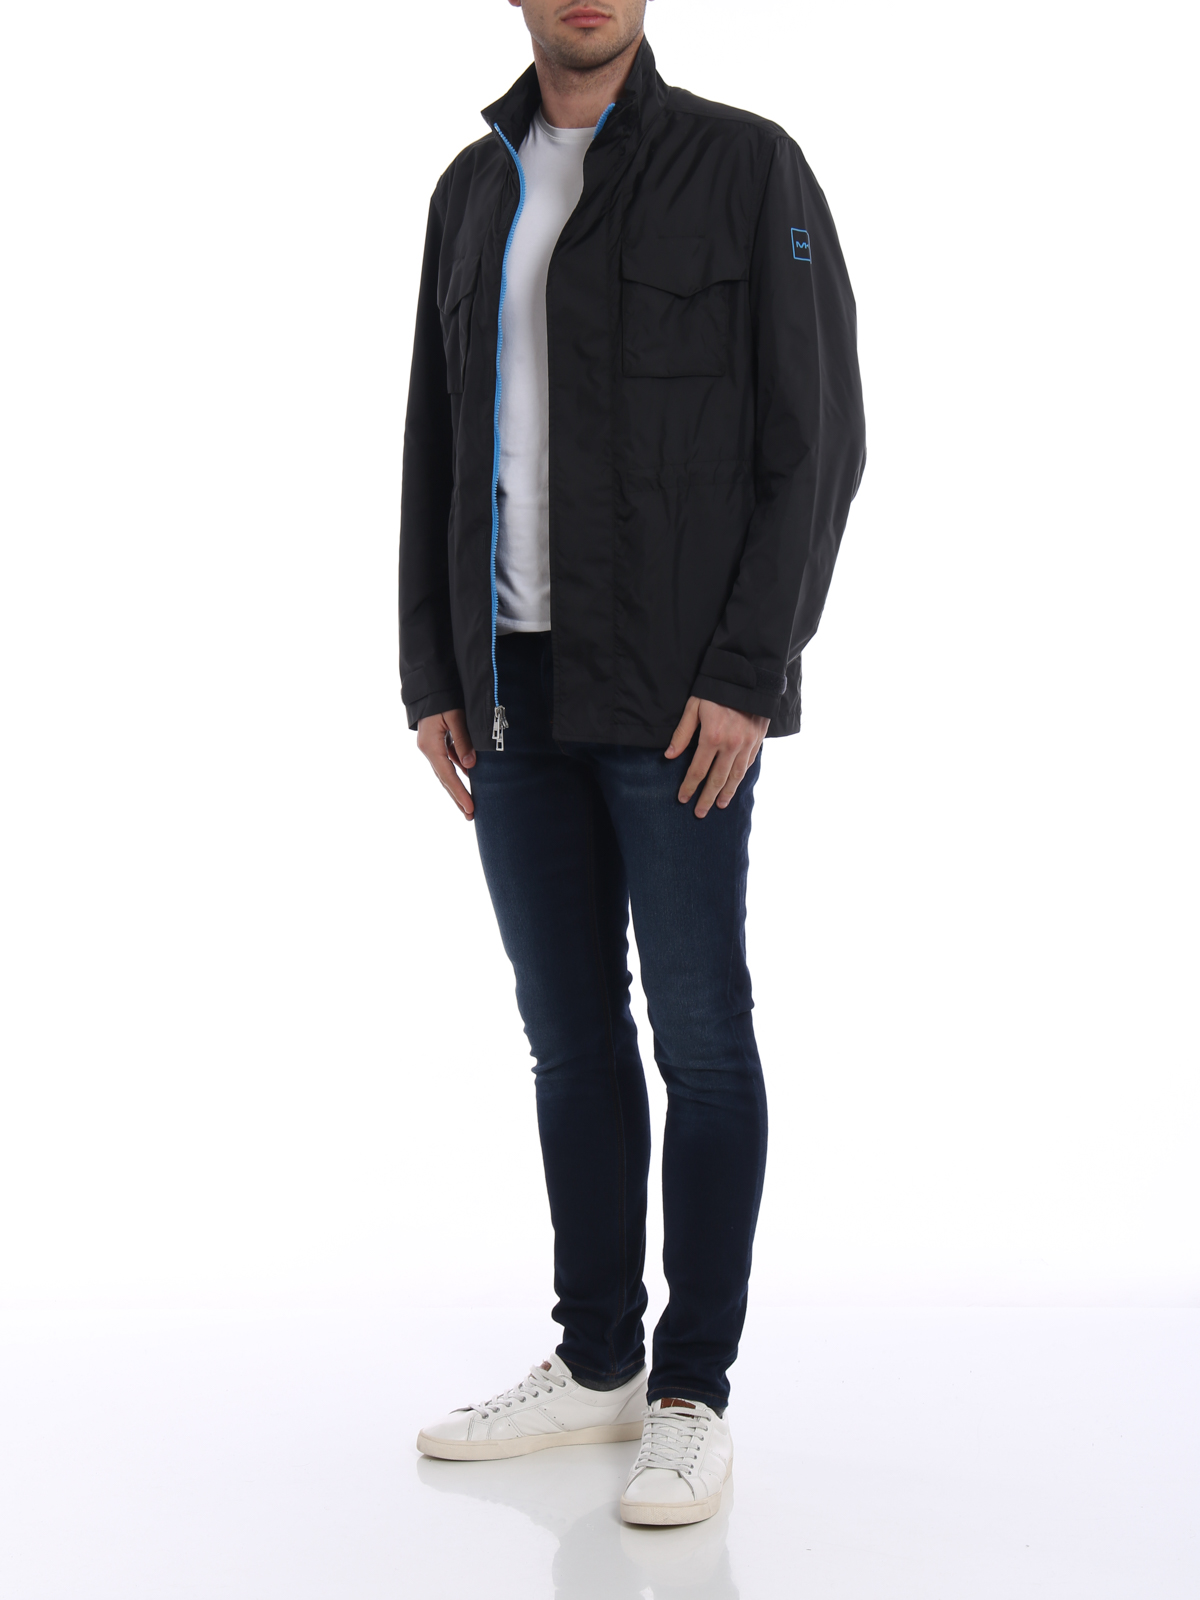 Michael Kors Mens Bomber Jacket Grey Size XL  eBay